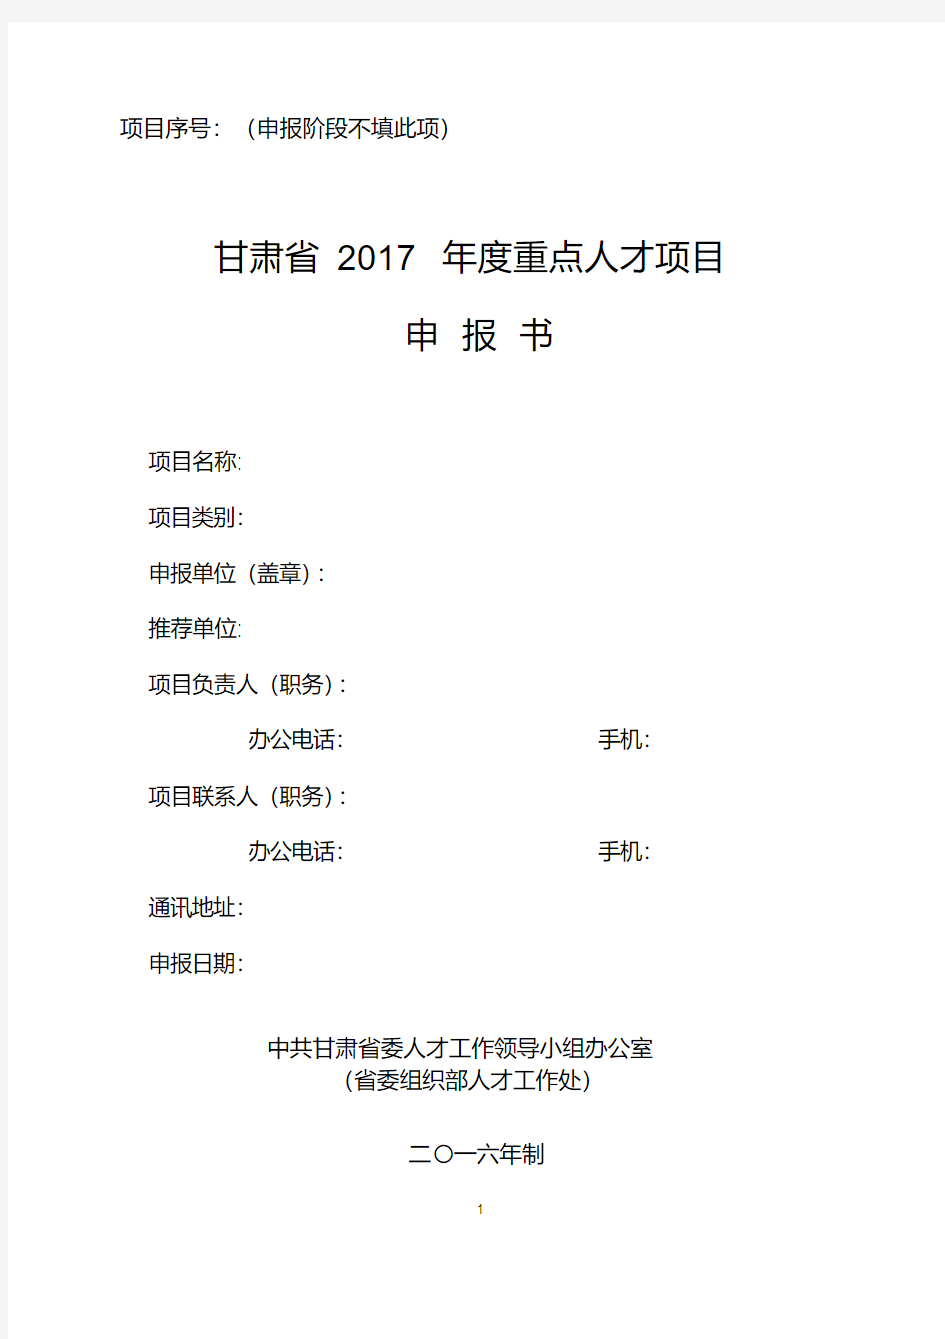 甘肃省2017年度重点人才项目申报书(2017年模版)